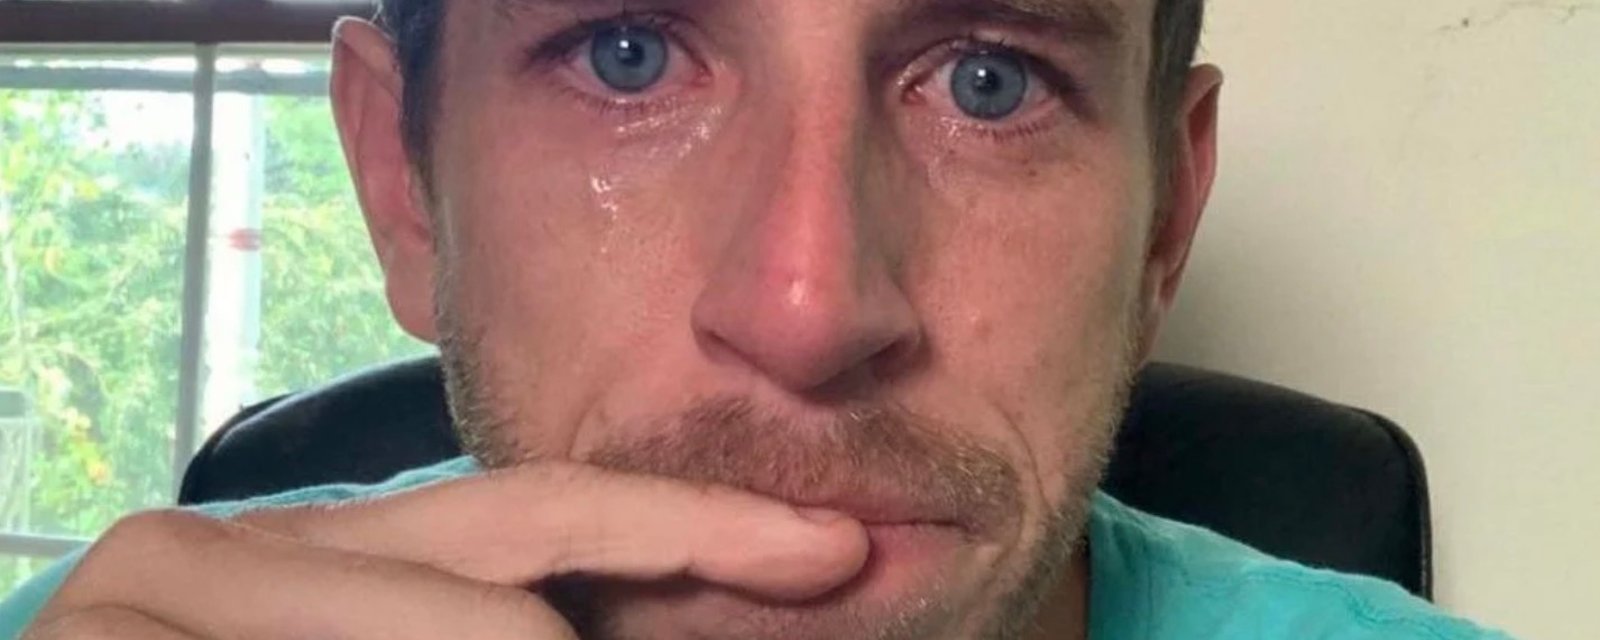 Un PDG soulève la colère en publiant une photo de lui qui pleure après avoir congédié des employés.